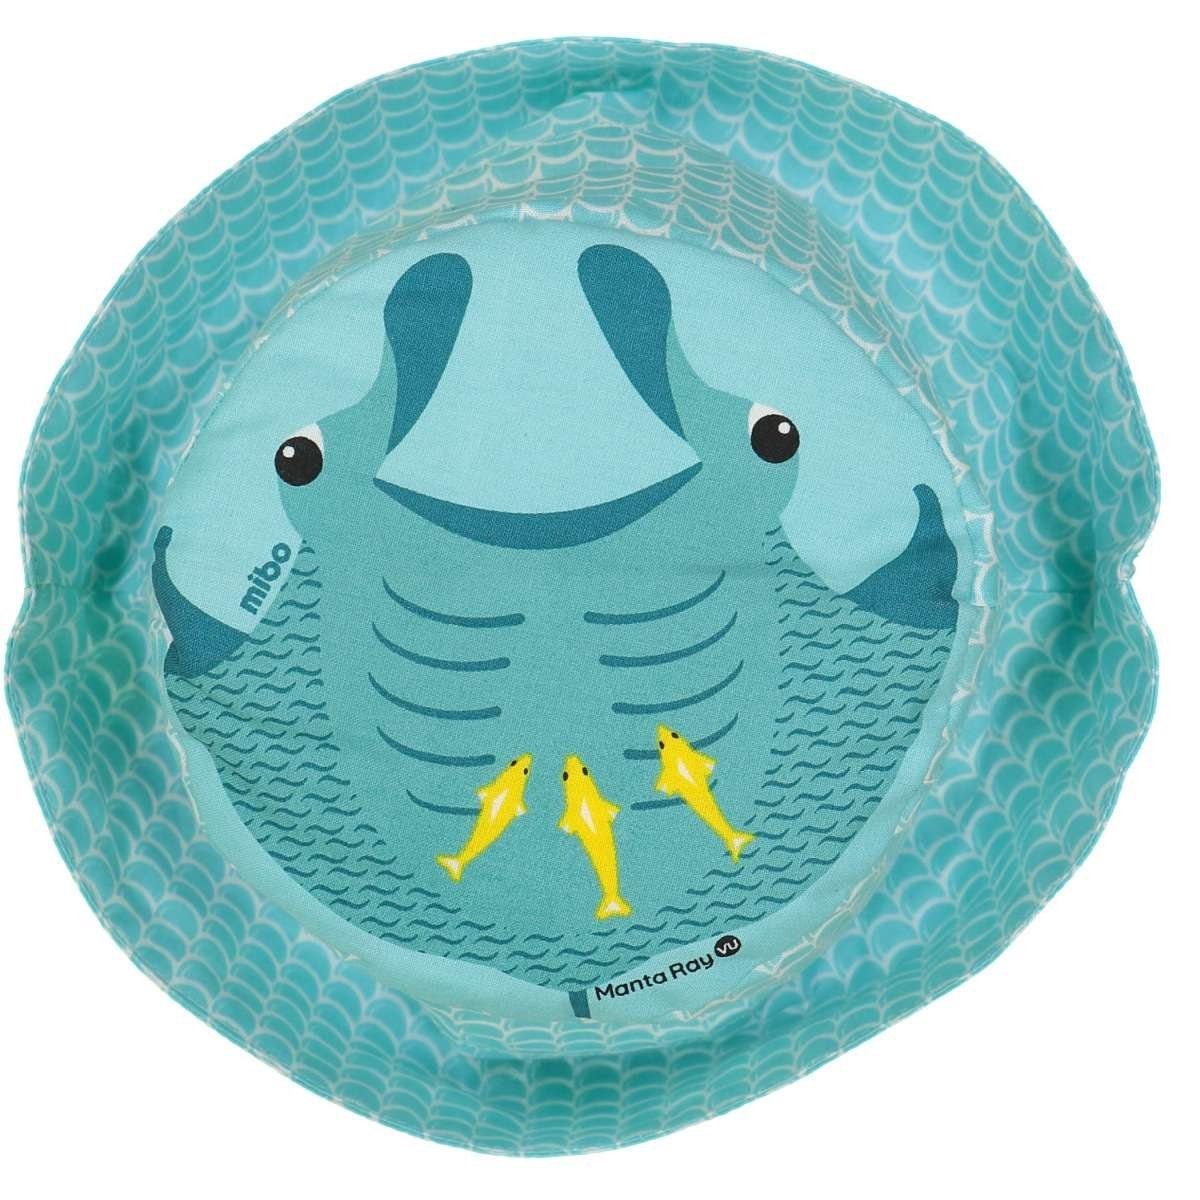 COQ EN S - Sonnenhut PATE Kinder-Hut Farbenfroher mit Tiermotiven Mustern Mantarochen und Sonnenschutz Größe